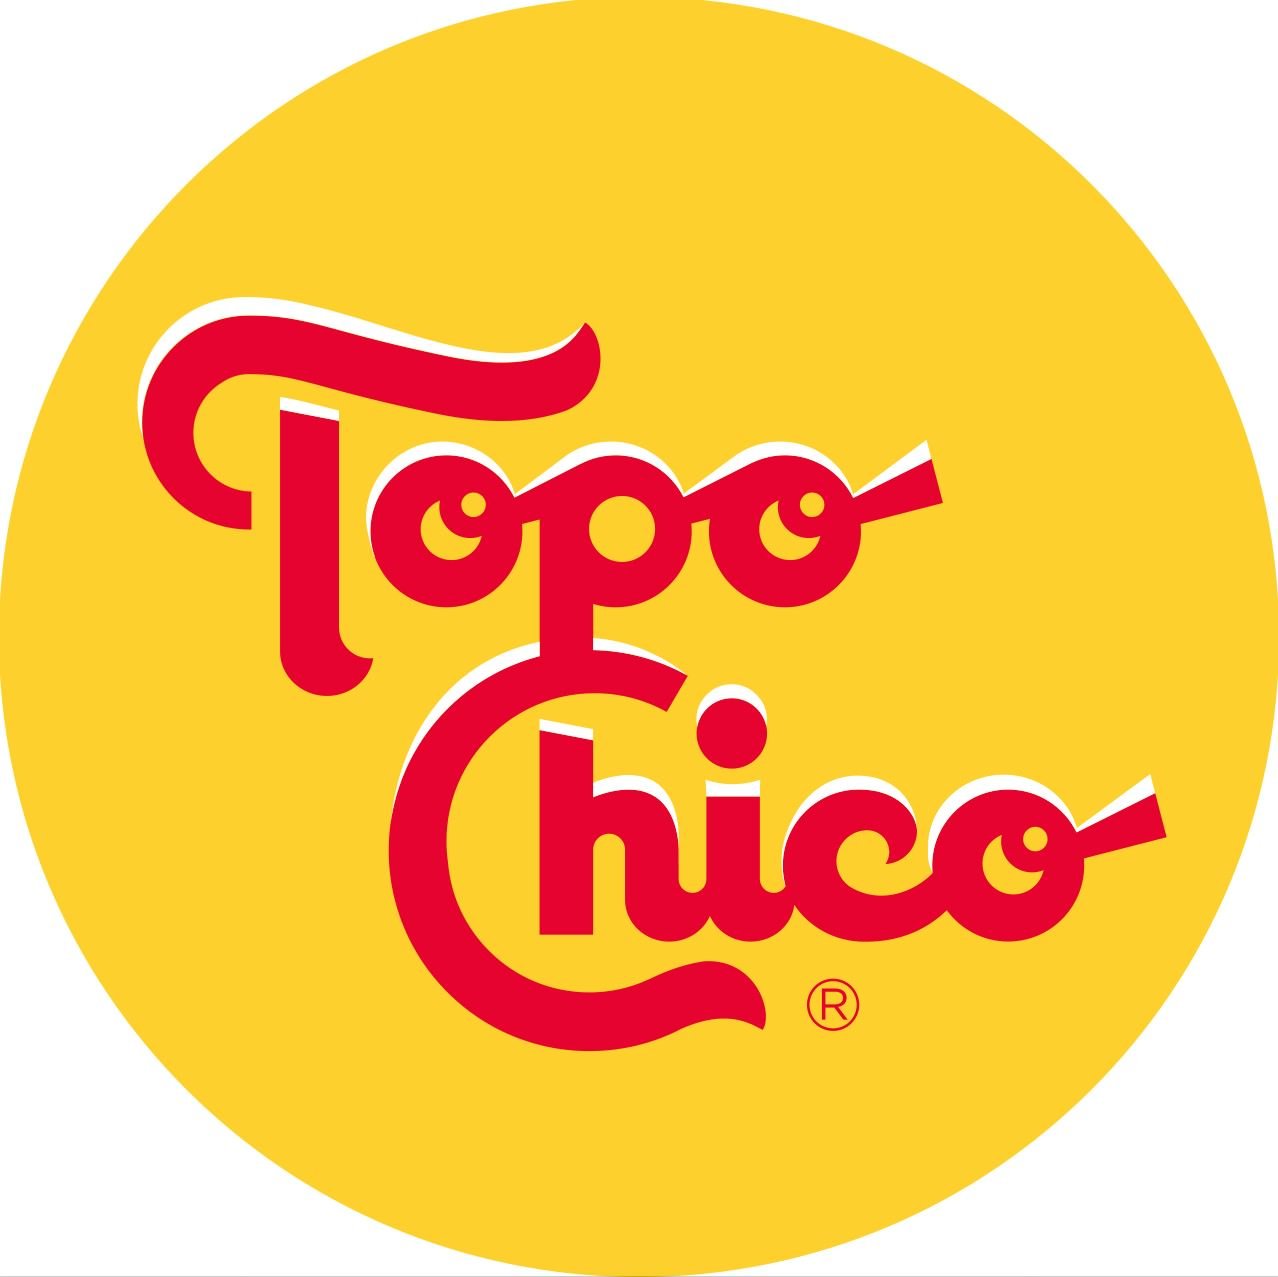 Topo Chico Logo.jpg